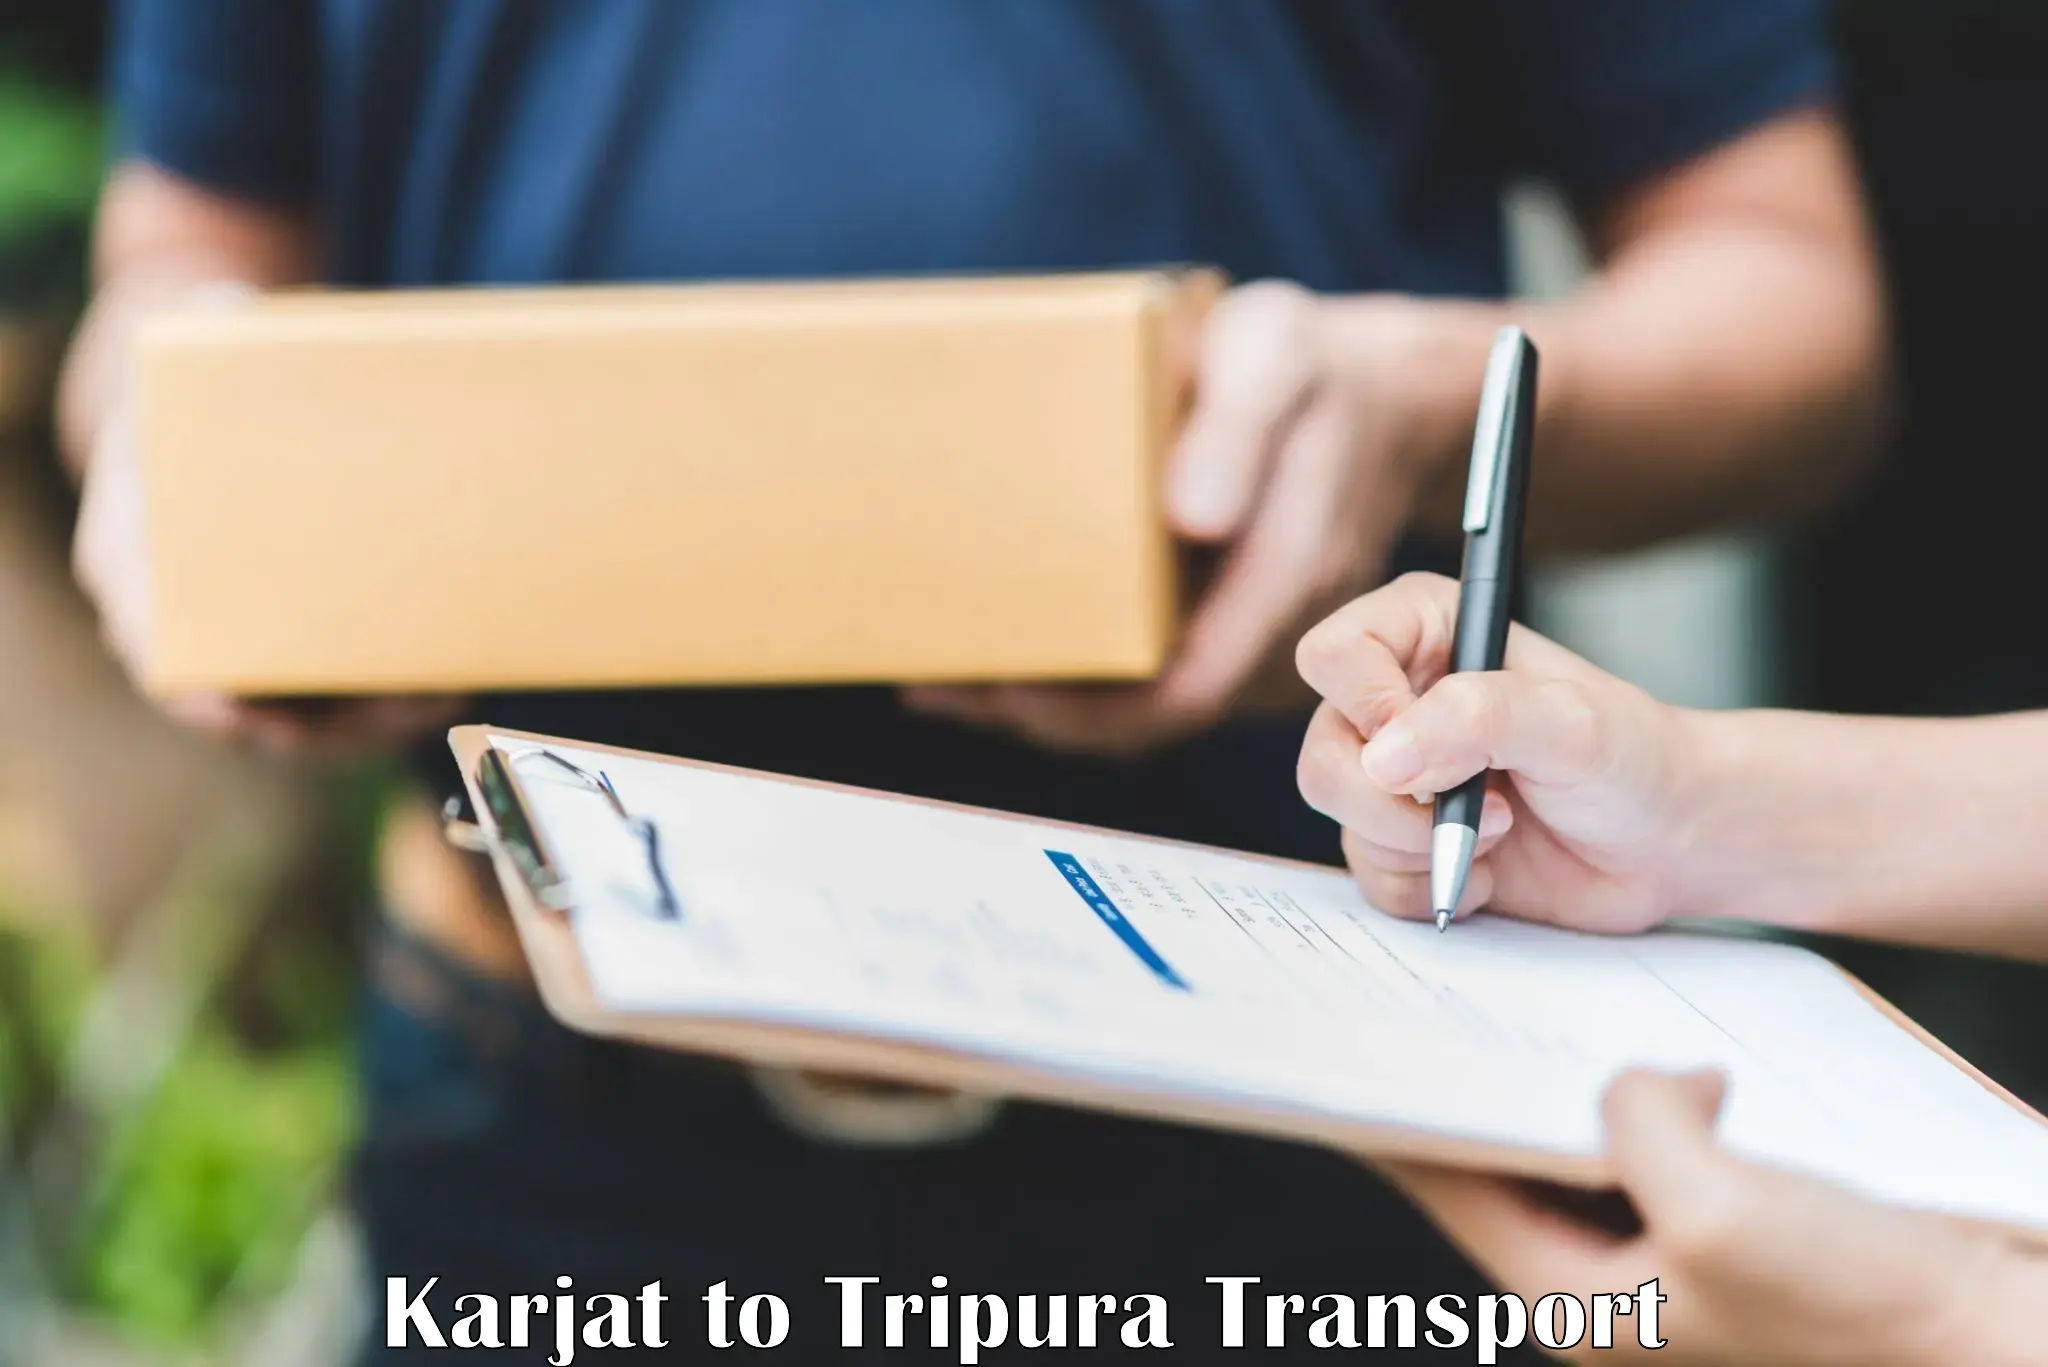 Transport in sharing Karjat to Manu Bazar